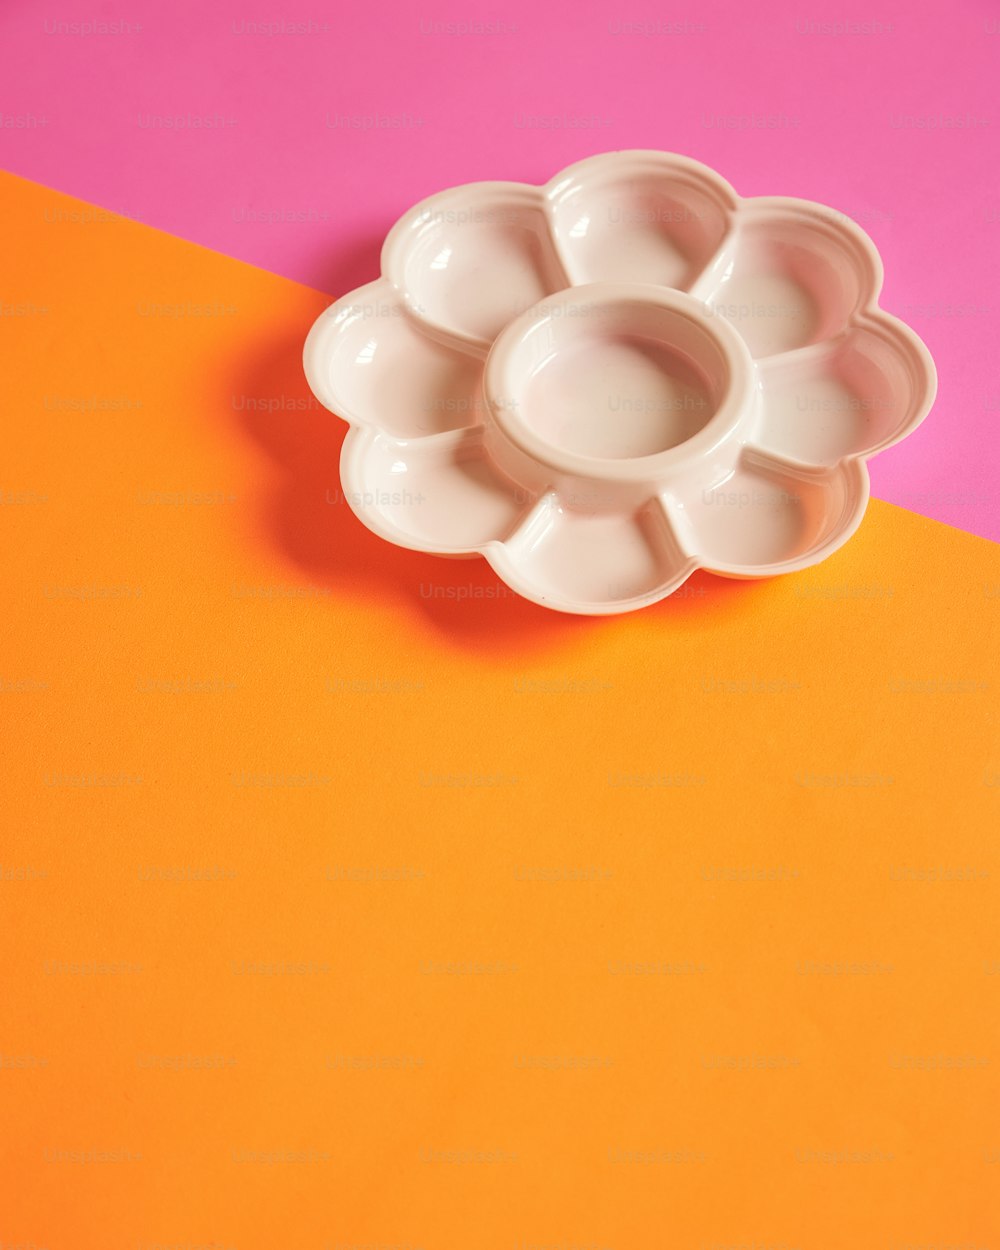 オレンジとピンクのテーブルの上に座っている白い花の形のボウル